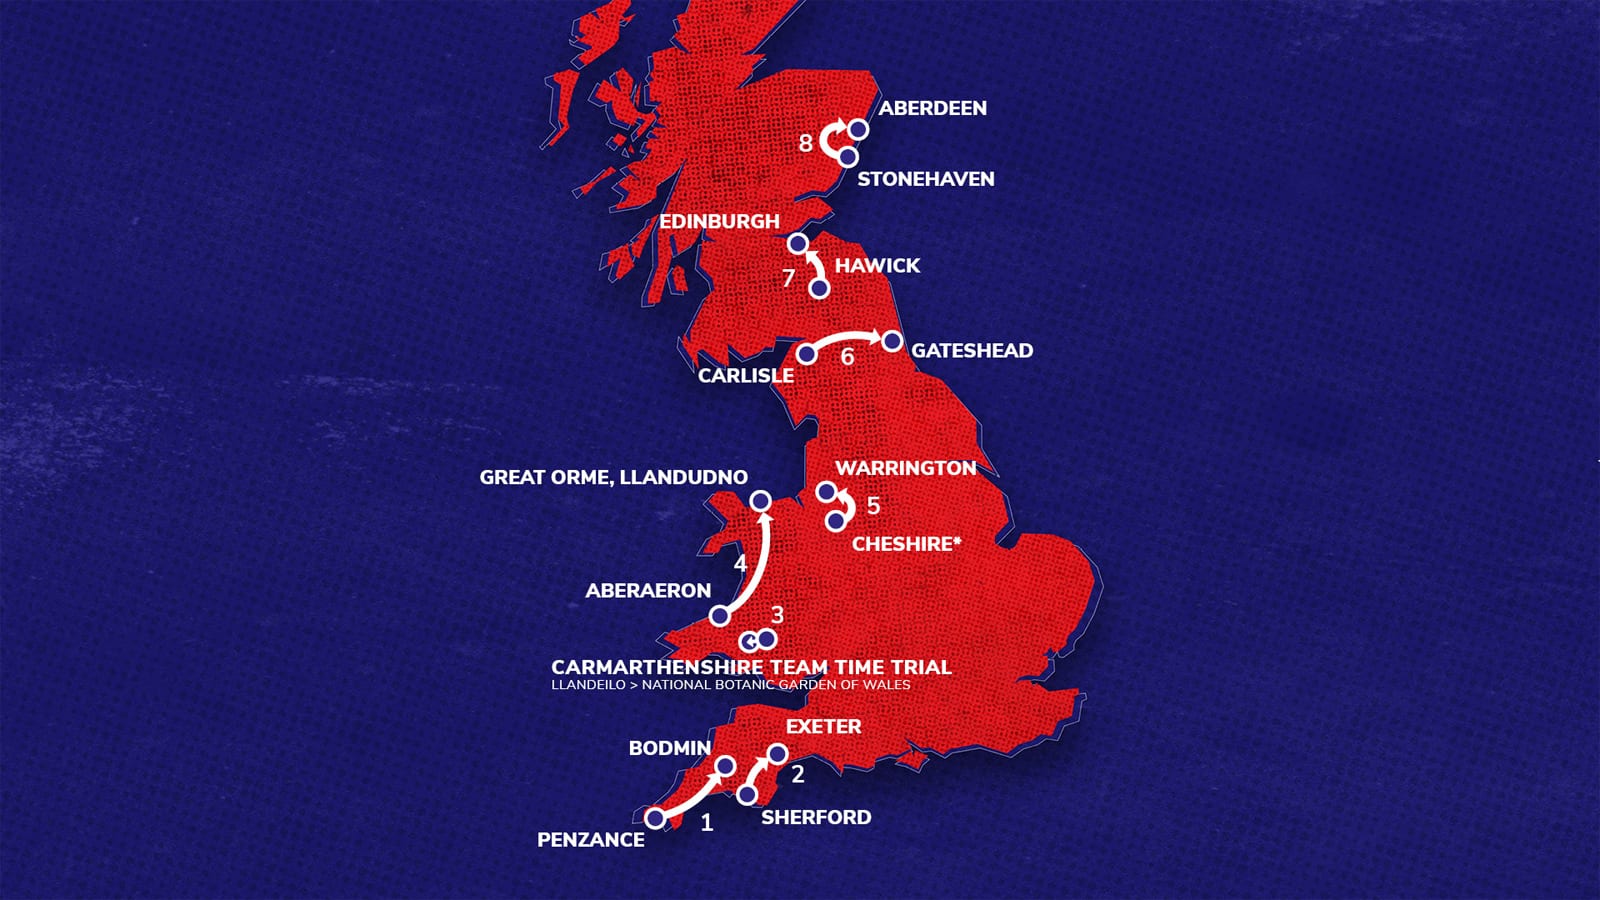 Chặng 7 Tour of Britain 2021 dài 194,8km từ Hawick đến Edinburgh